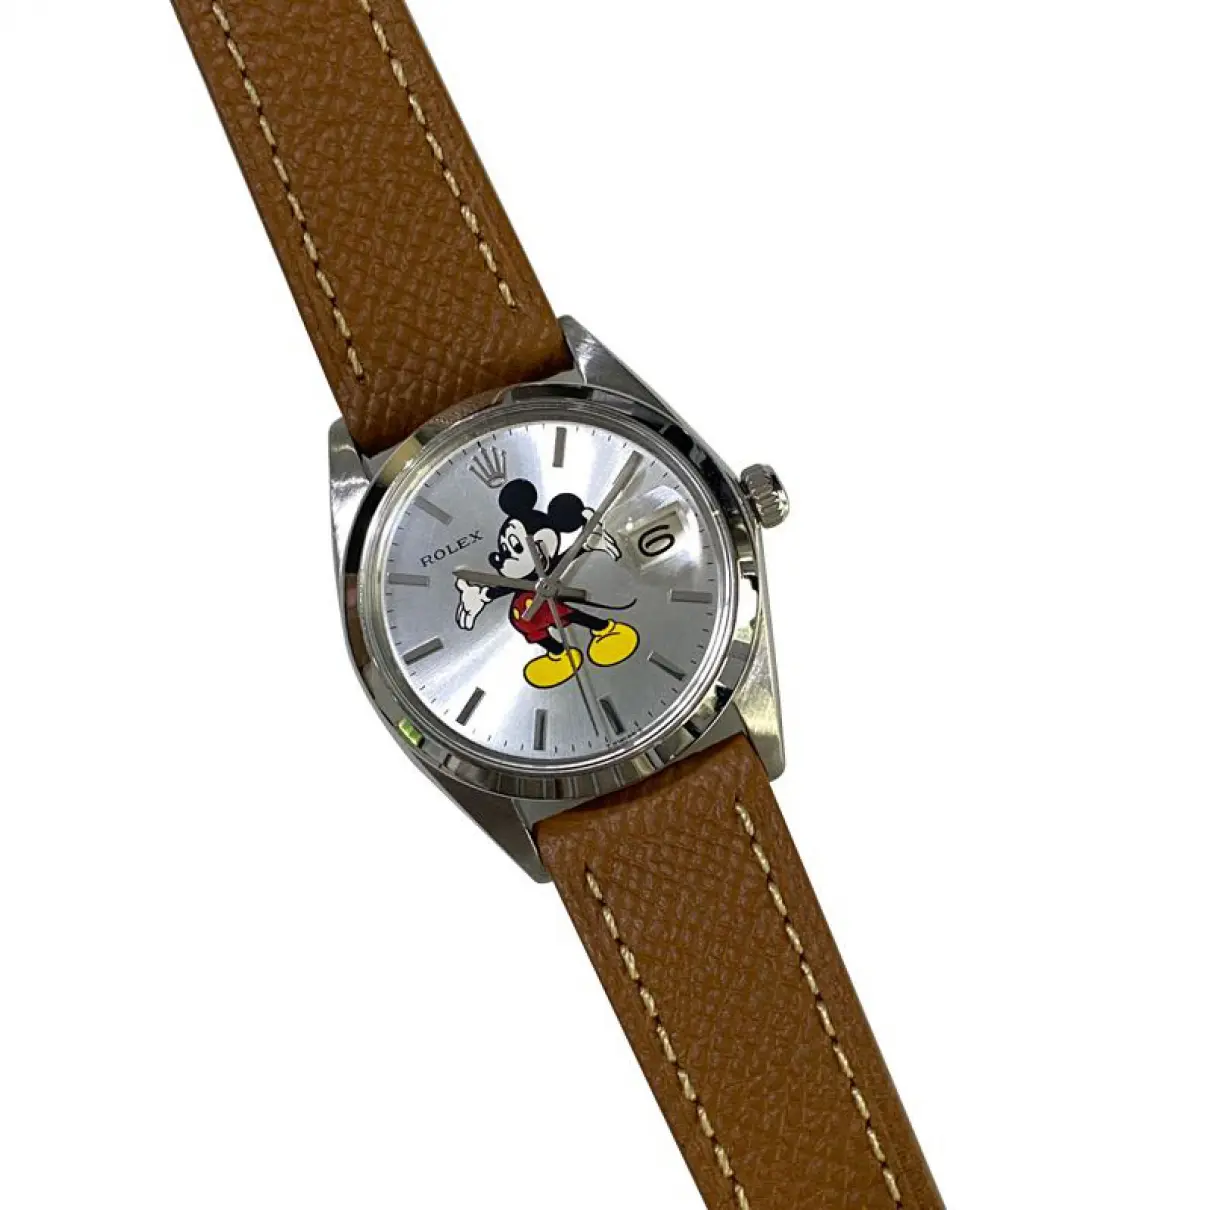 Oysterdate 34mm watch Rolex - Vintage